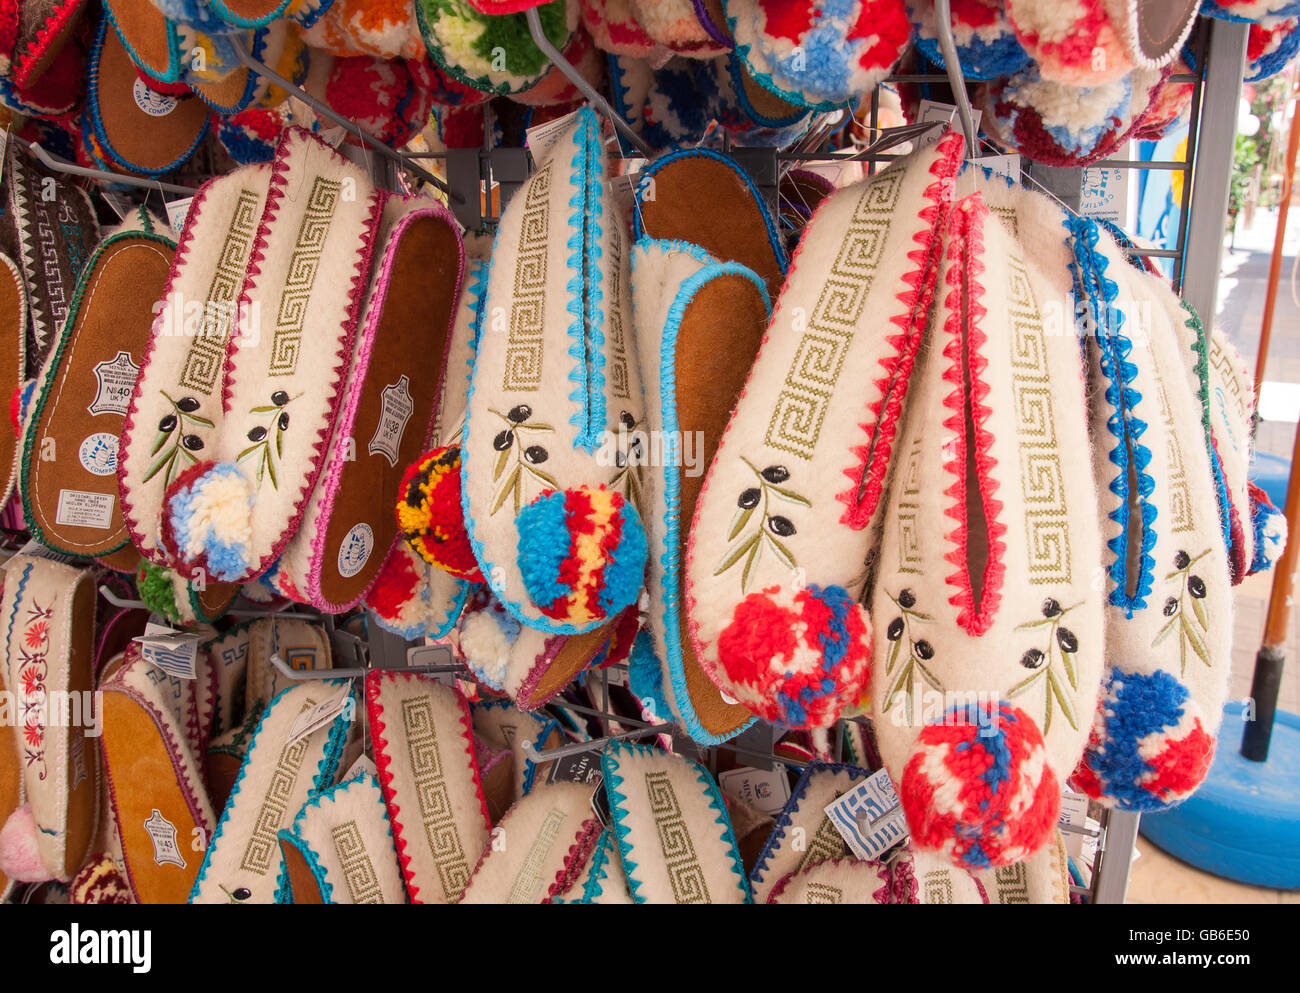 Chaussons en laine traditionnelle grecque dans une boutique de souvenirs, Mastichari, Kos (Cos), du Dodécanèse, Grèce, région sud de la Mer Egée Banque D'Images